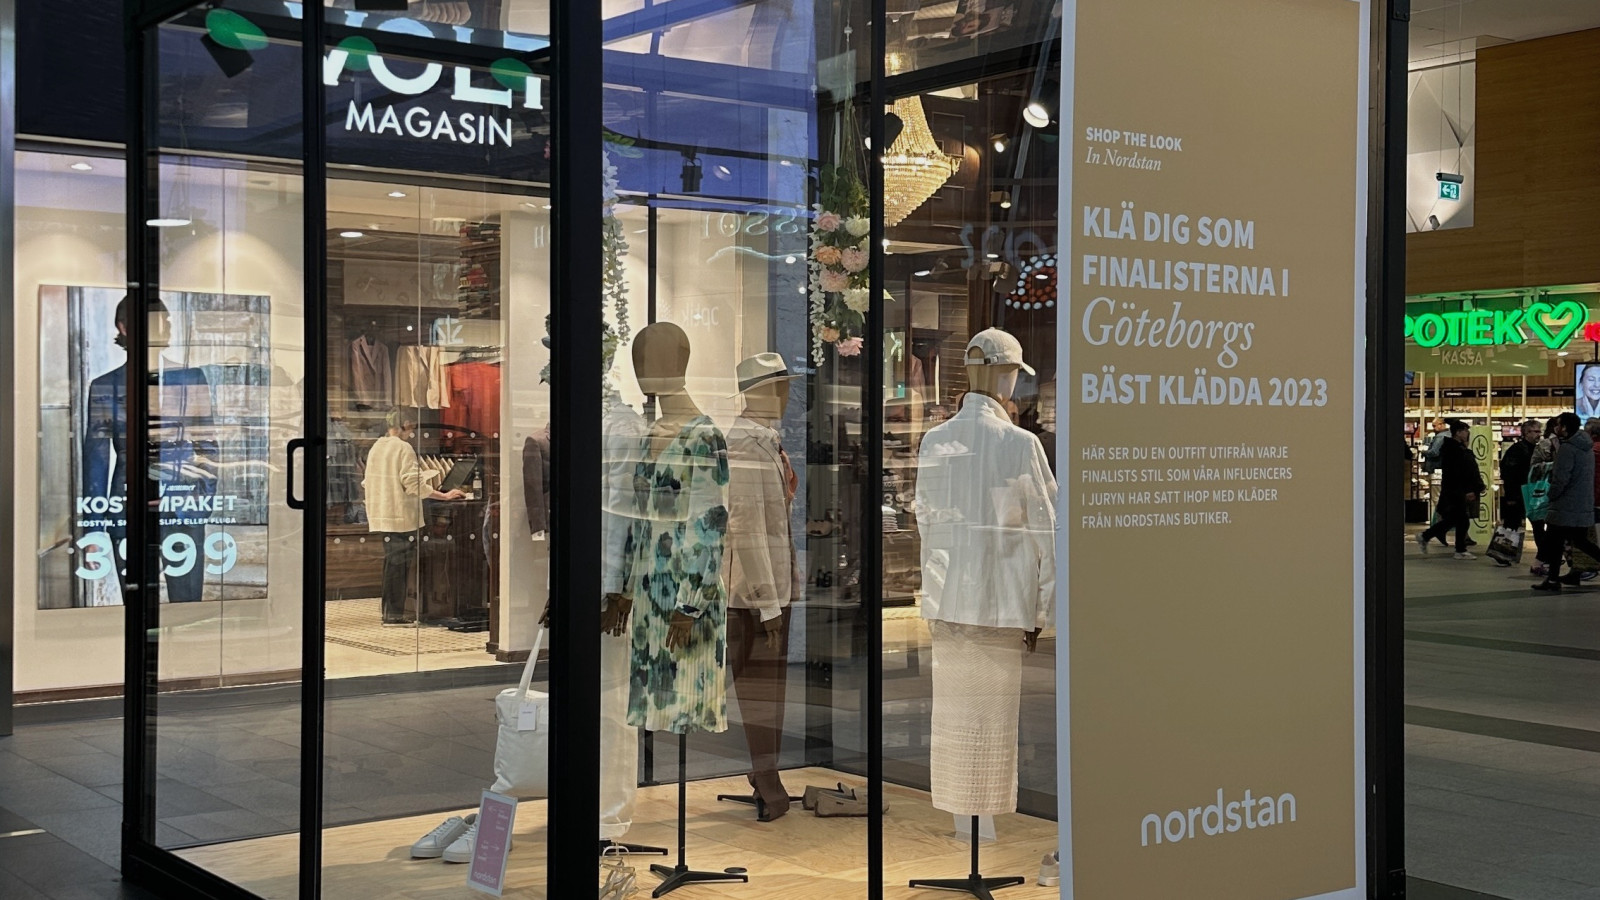 Retailboxar / Nordstan